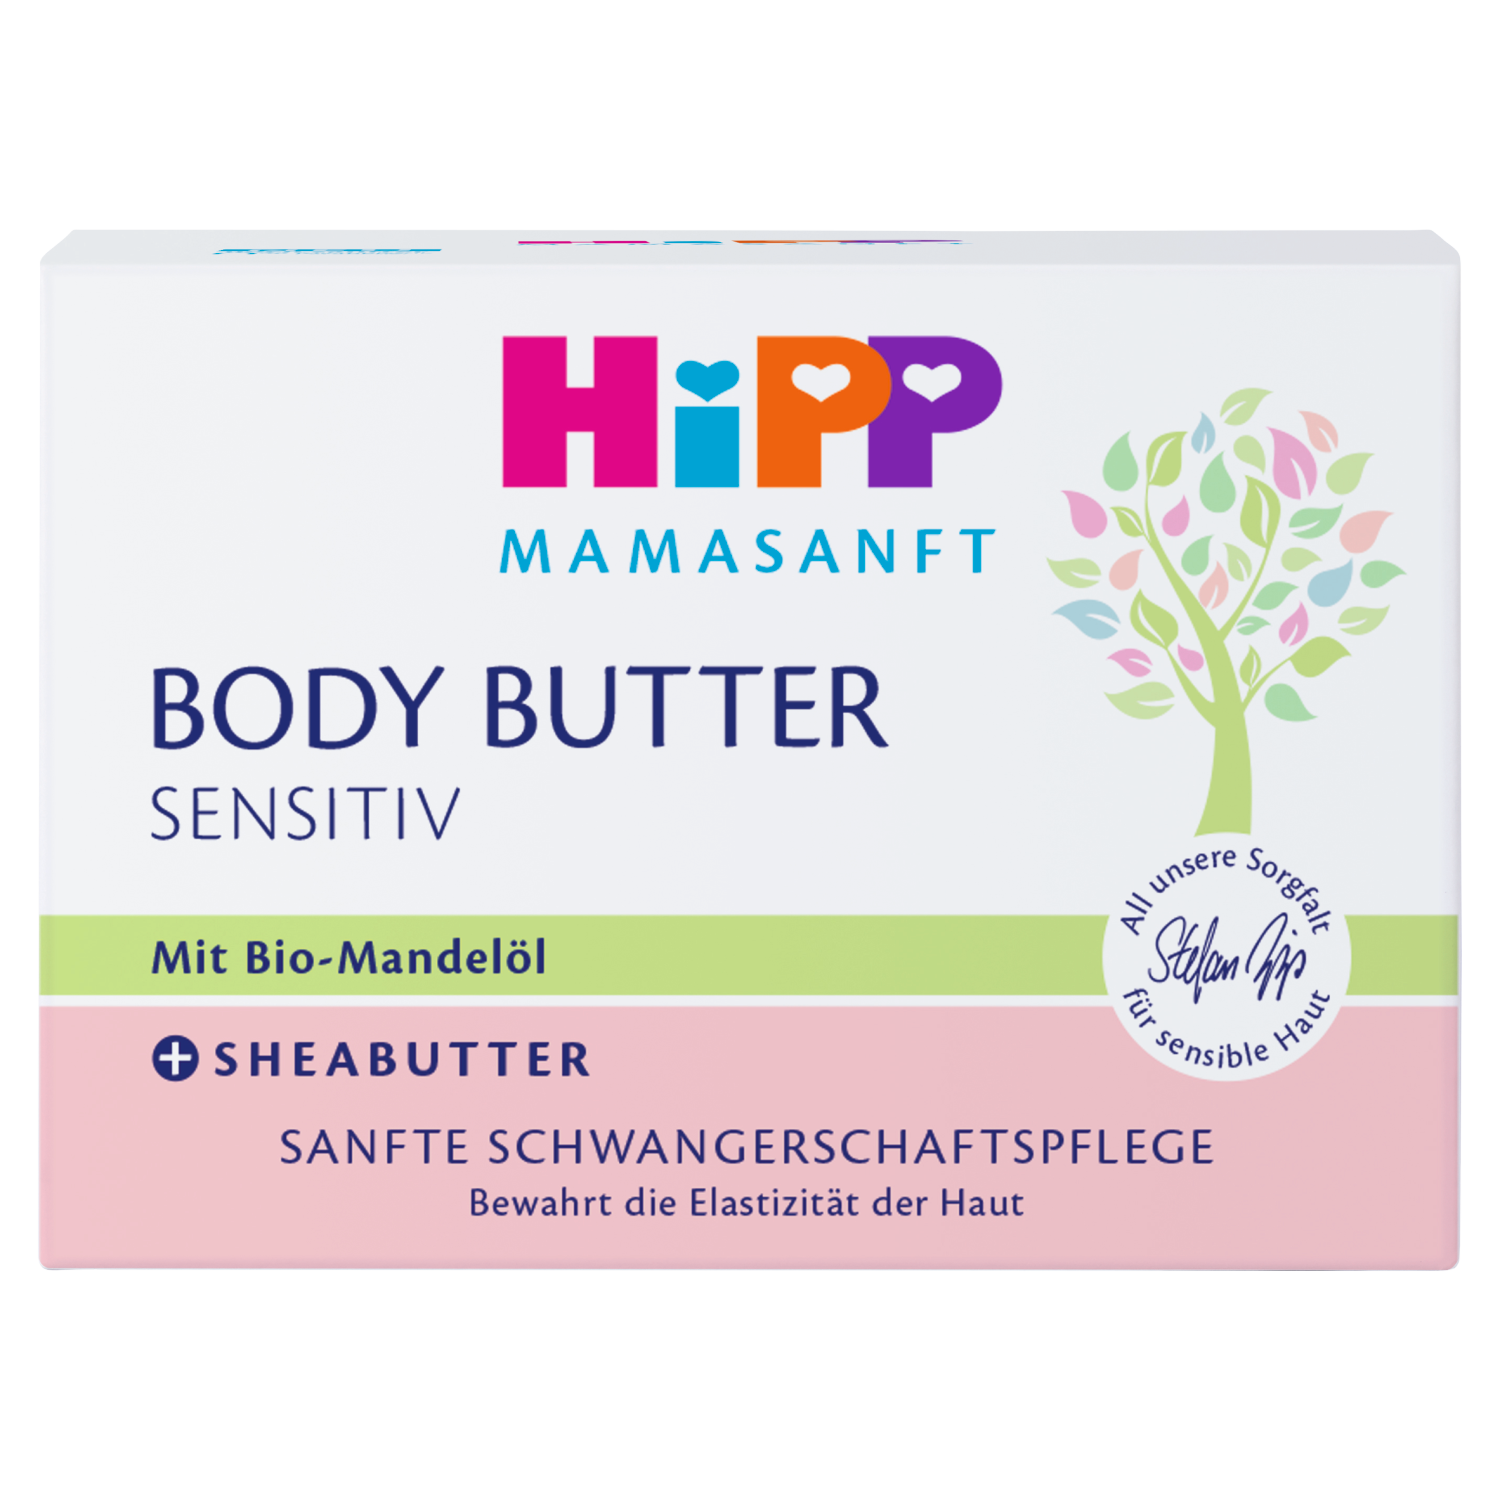 Масло для тела для женщин Hipp Mamasanft, 200 мл косметика для мамы hipp mamasanft крем масло для тела для чувствительной кожи 200 мл